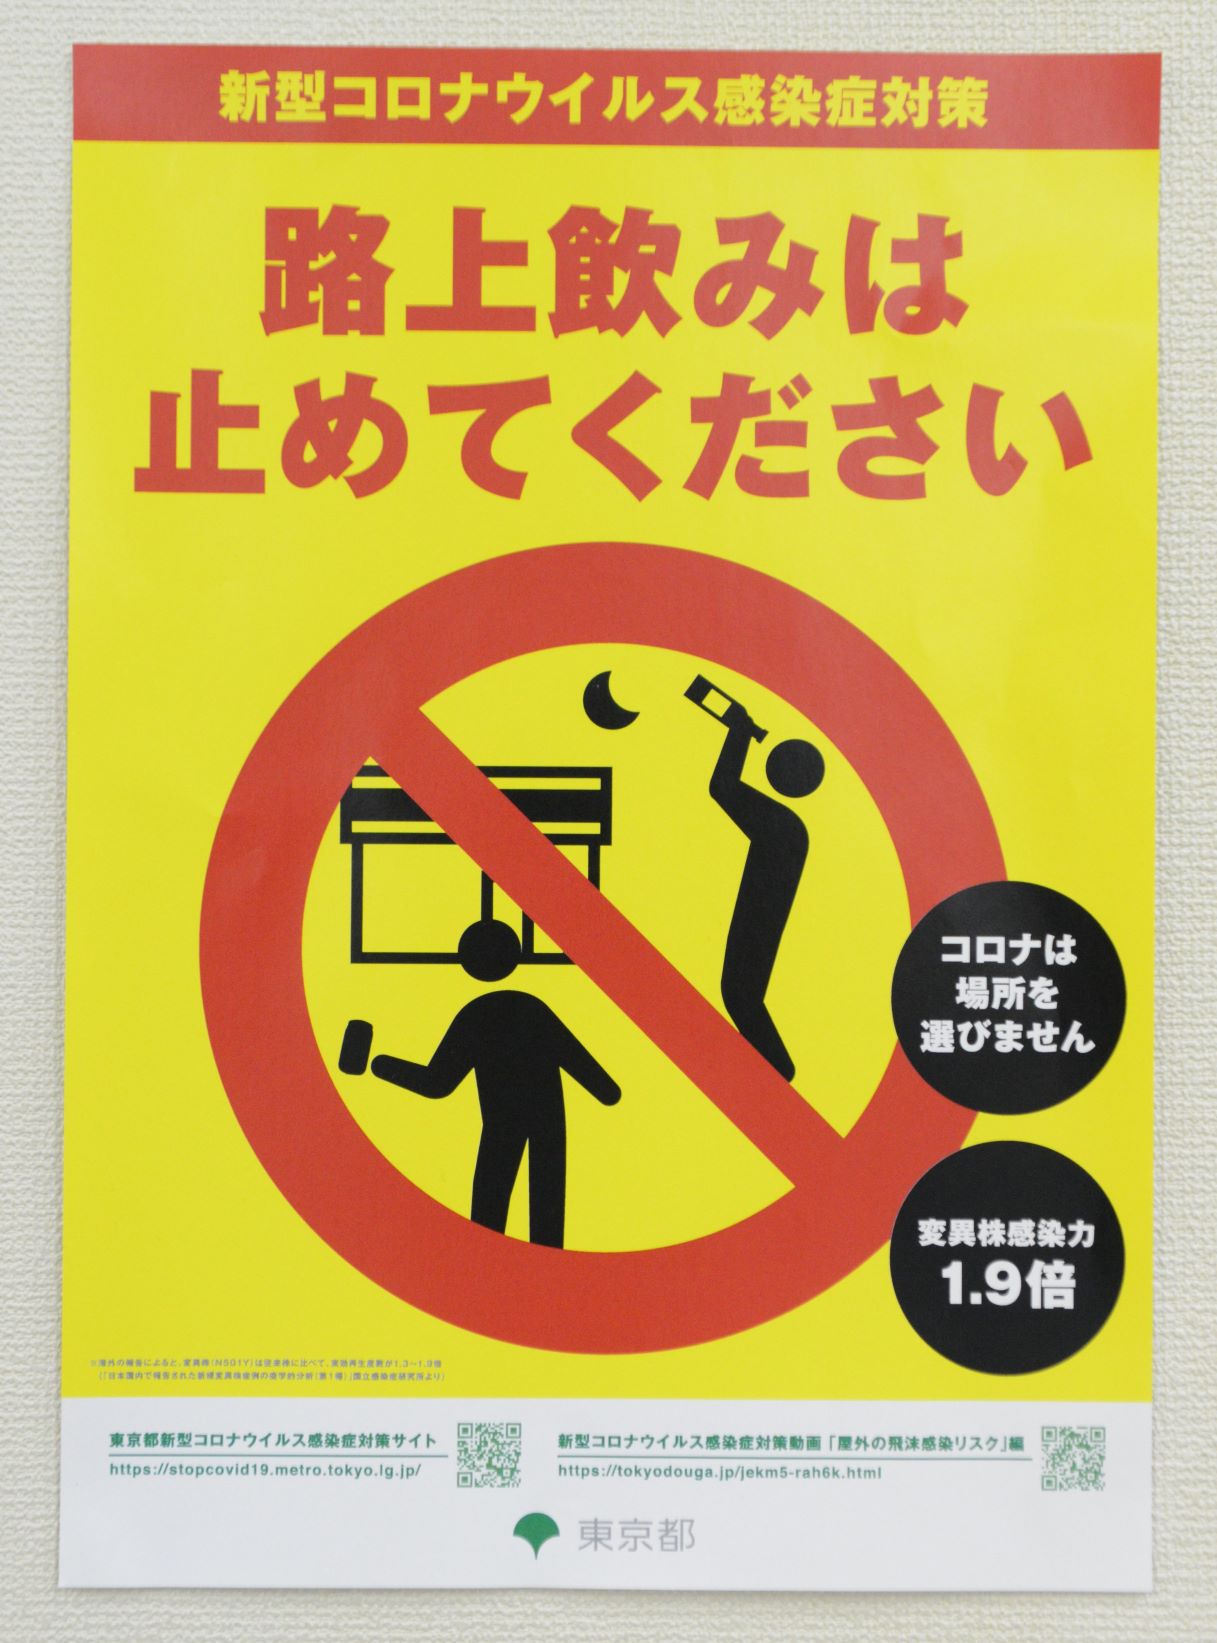 「路上飲み」自粛を求める東京都のポスター